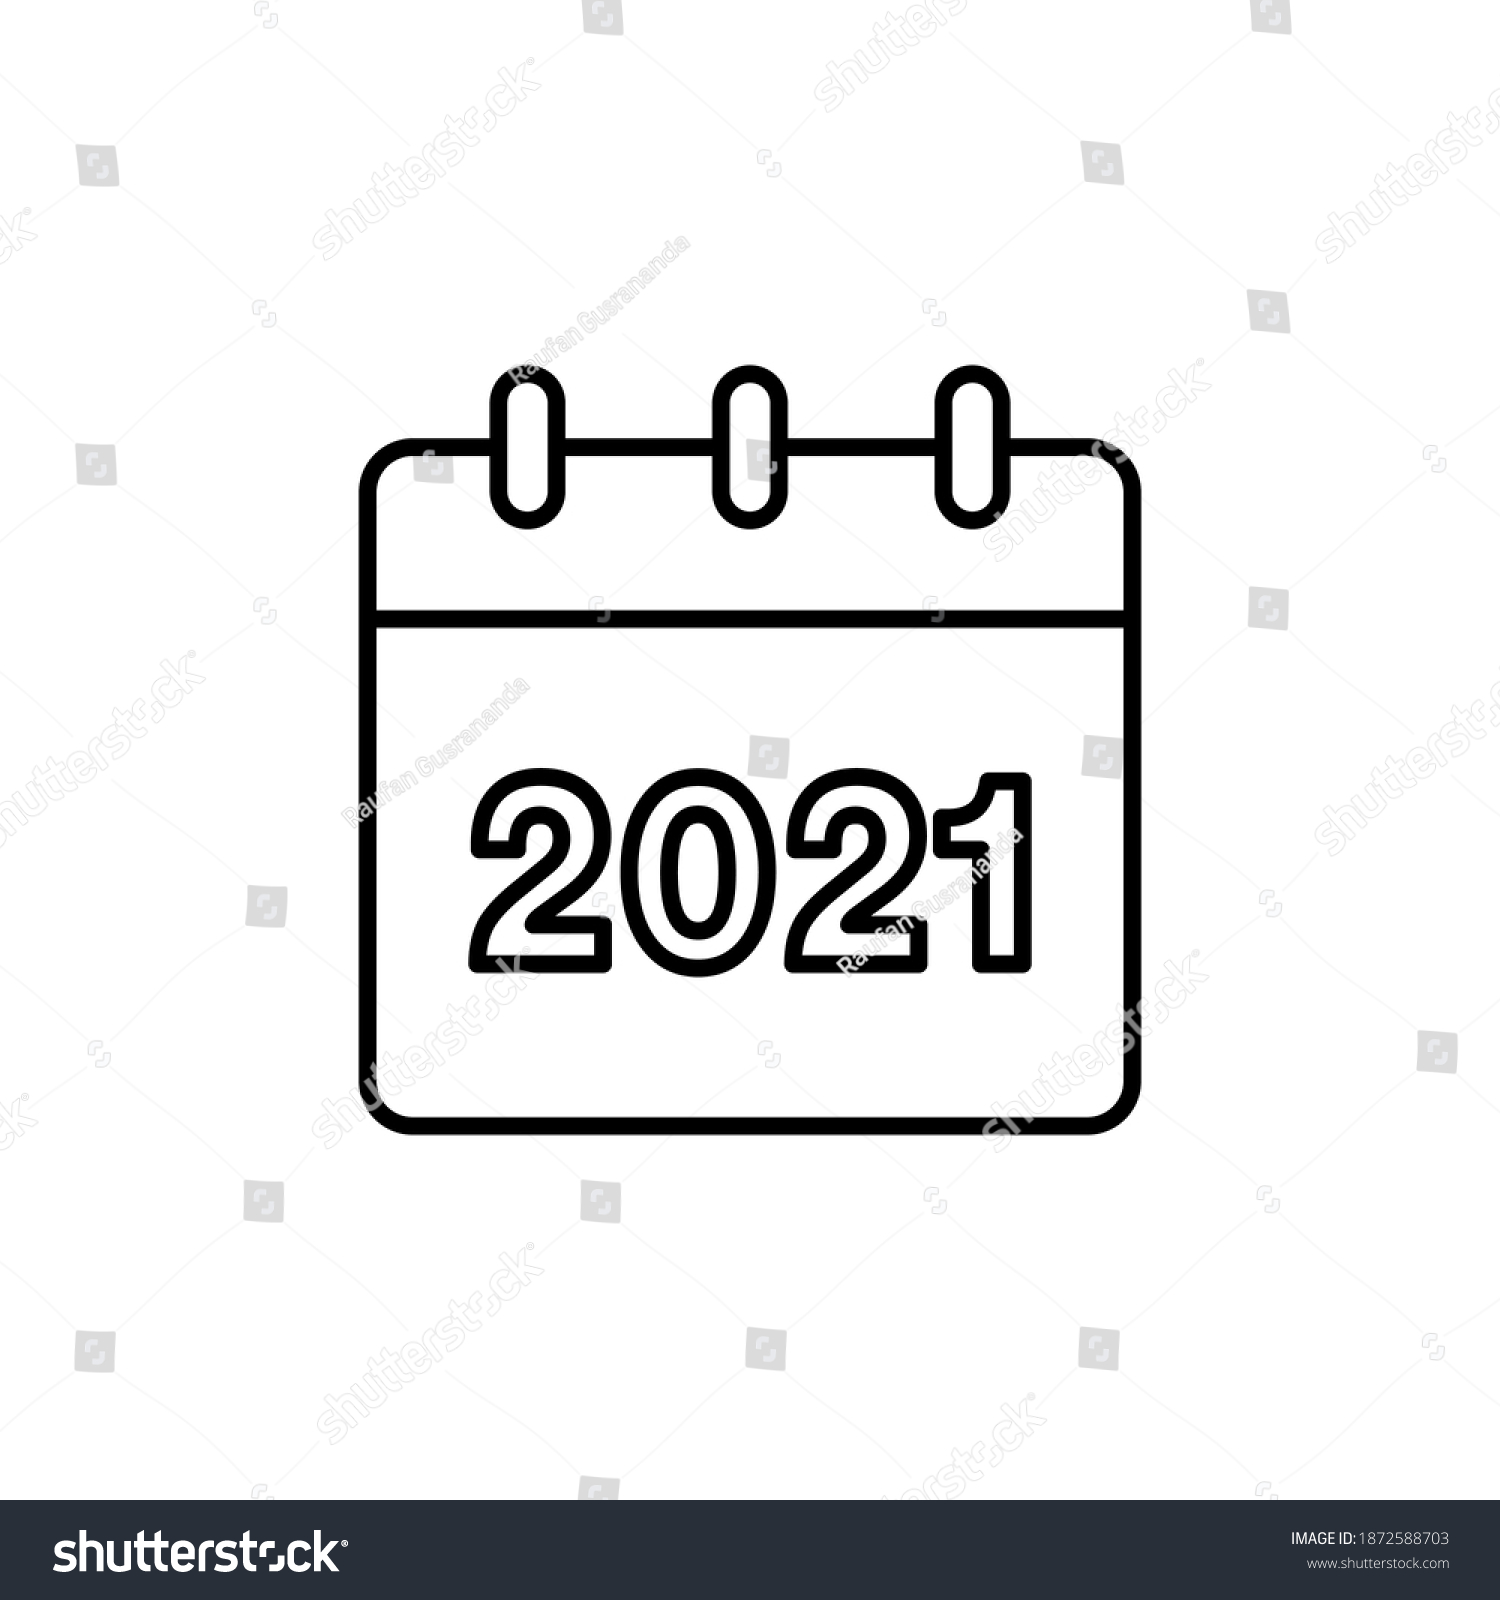 2021 Year Calendar Vector Icon Design Stock Vector Royalty Free